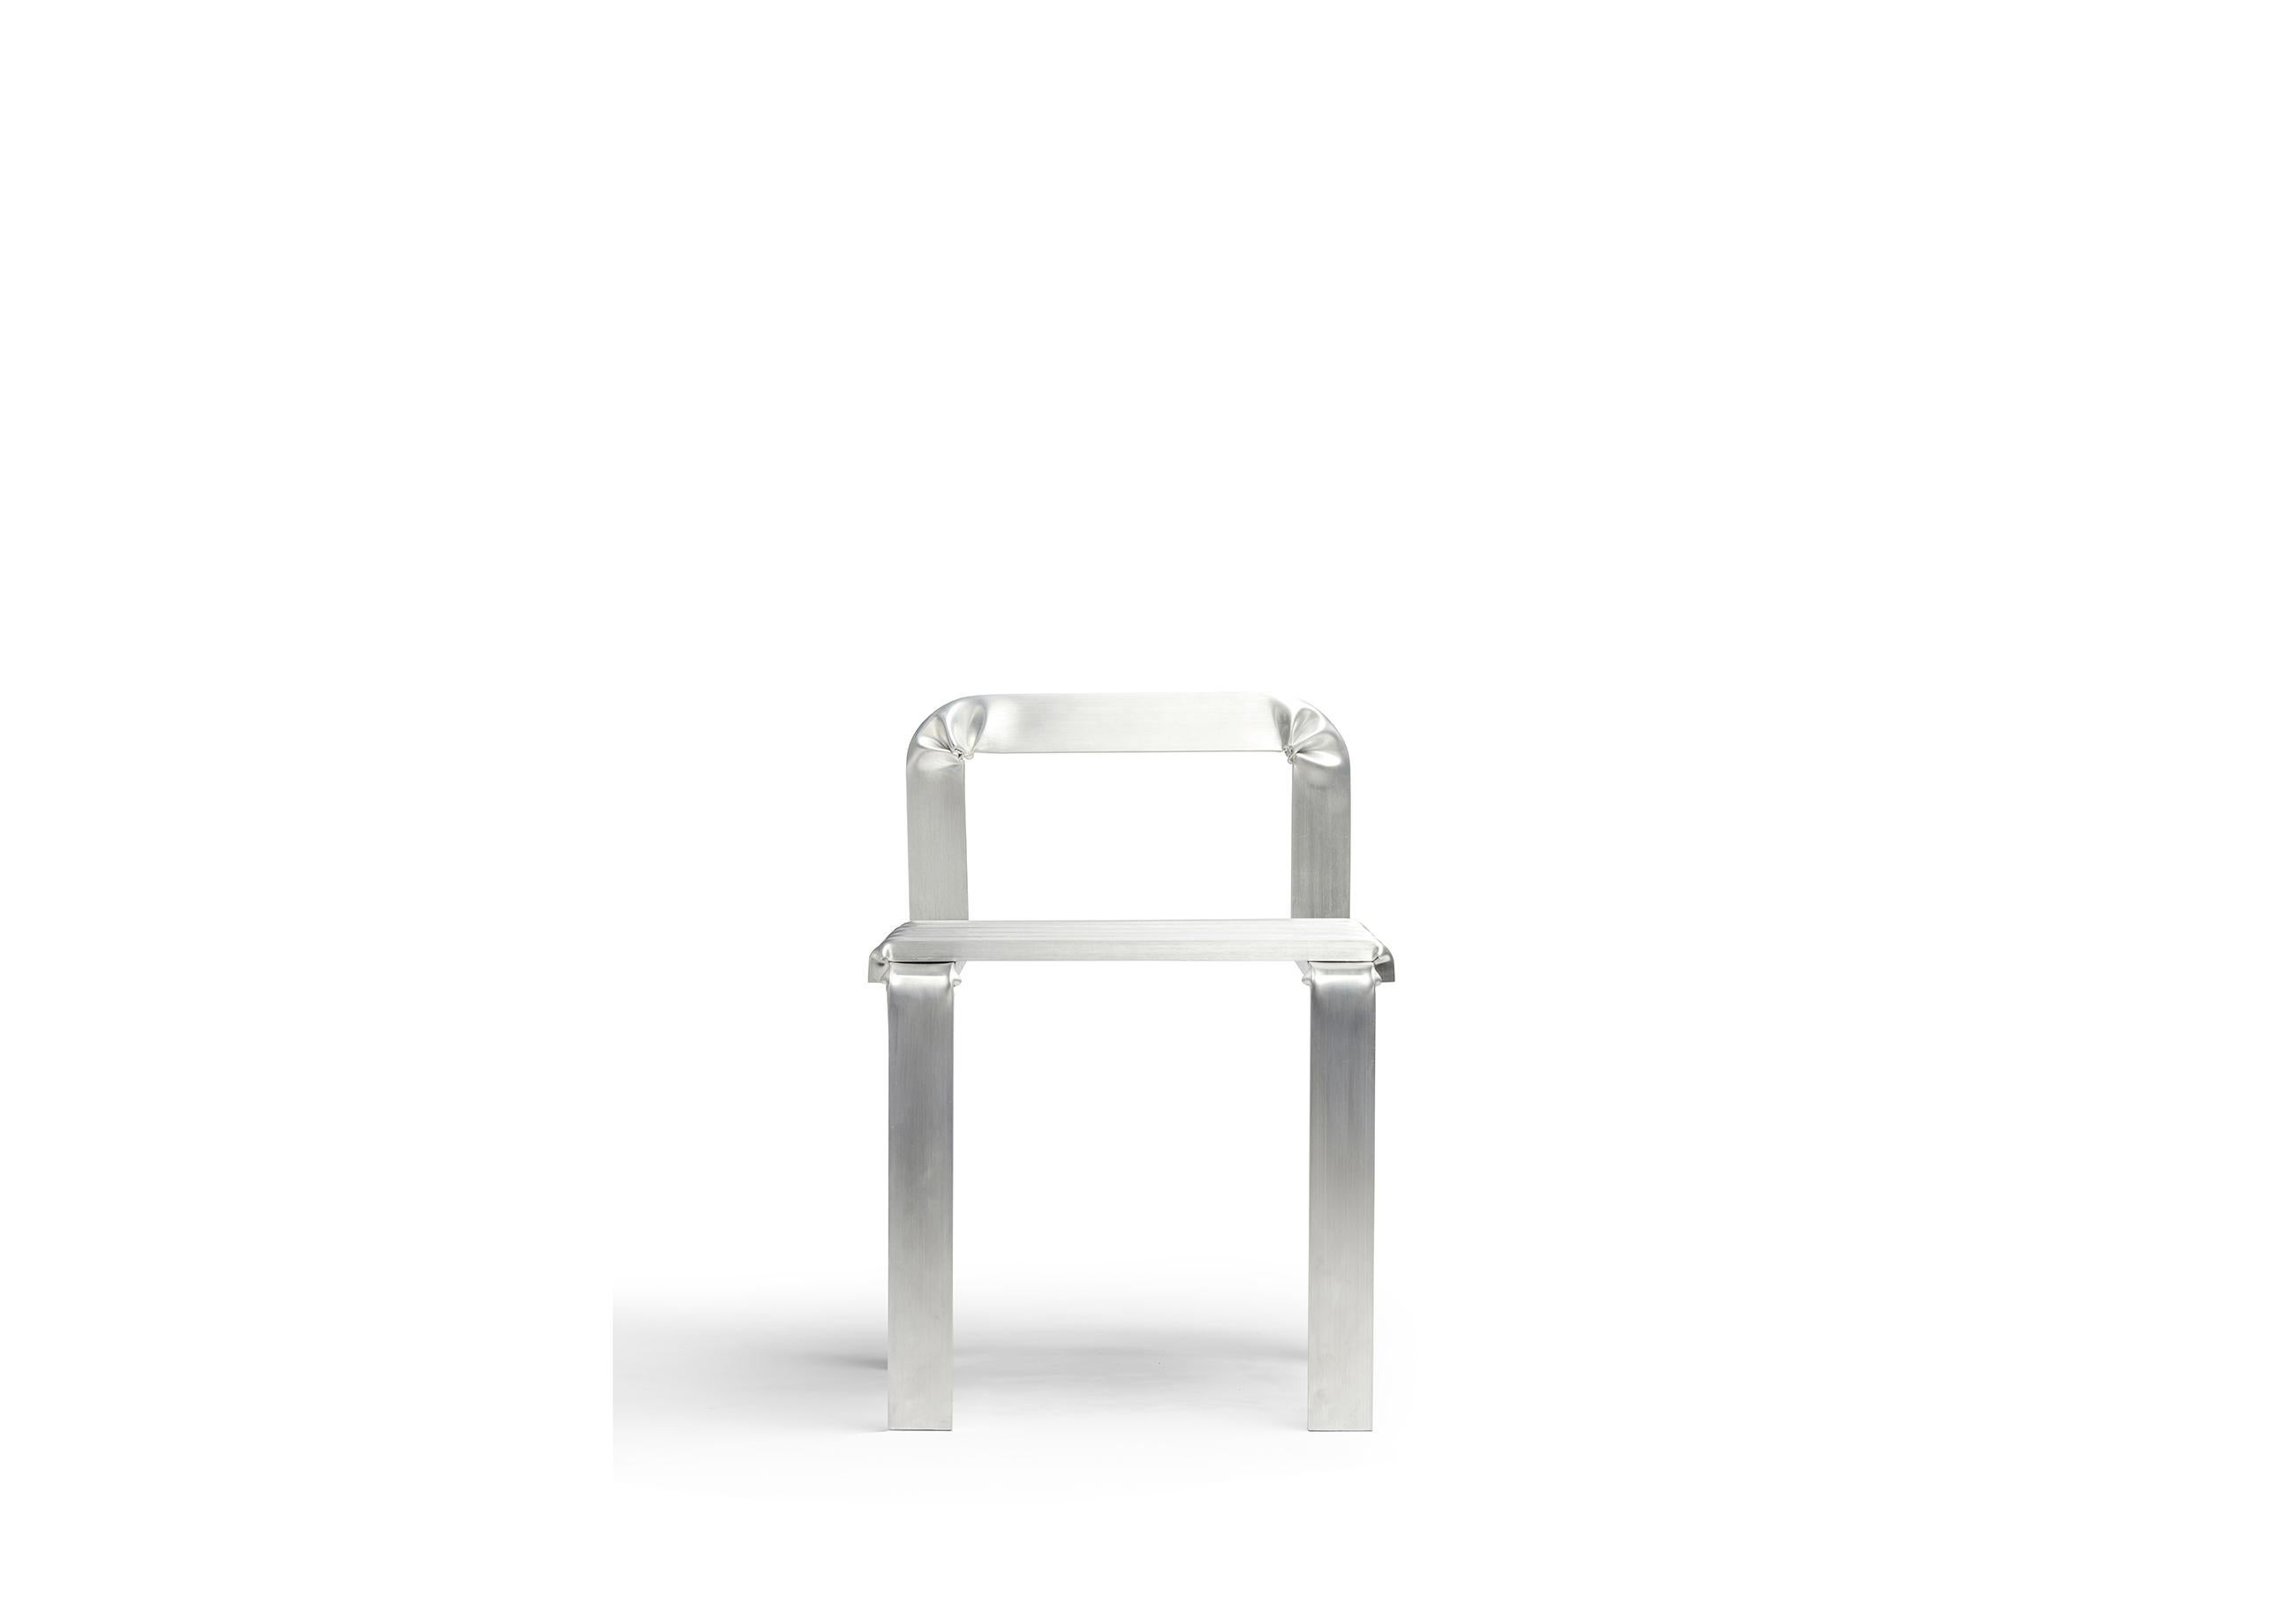 Dieser breite Stuhl mit niedriger Rückenlehne ist als ein Weg aus gefalteten Aluminiumrohren konzipiert. Die Ecken werden manuell verformt, um die Plastizität des Materials zu demonstrieren. 

Das Konzept für den Stuhl Unstressed geht von der